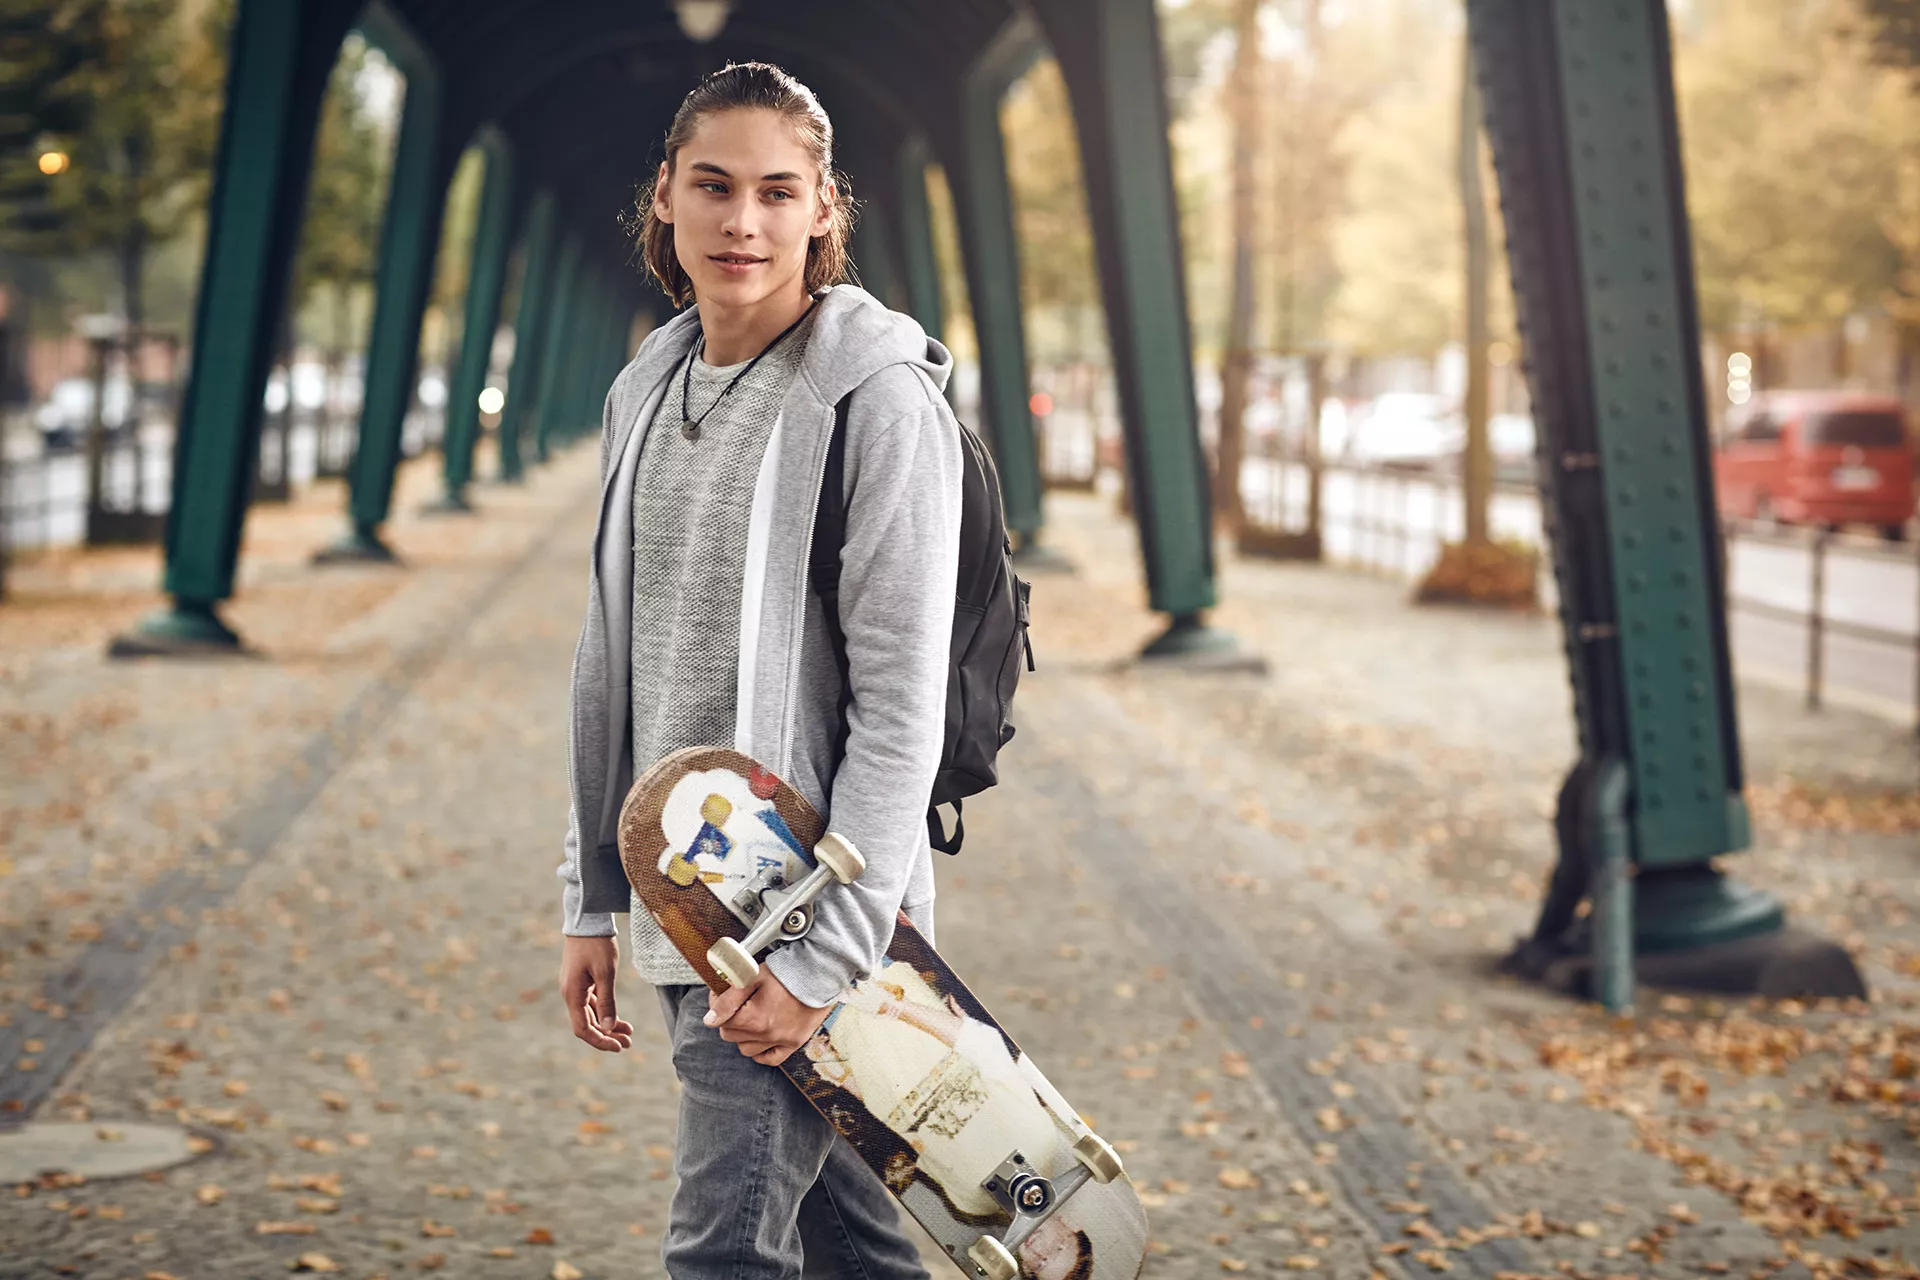 Junge mit Skateboard